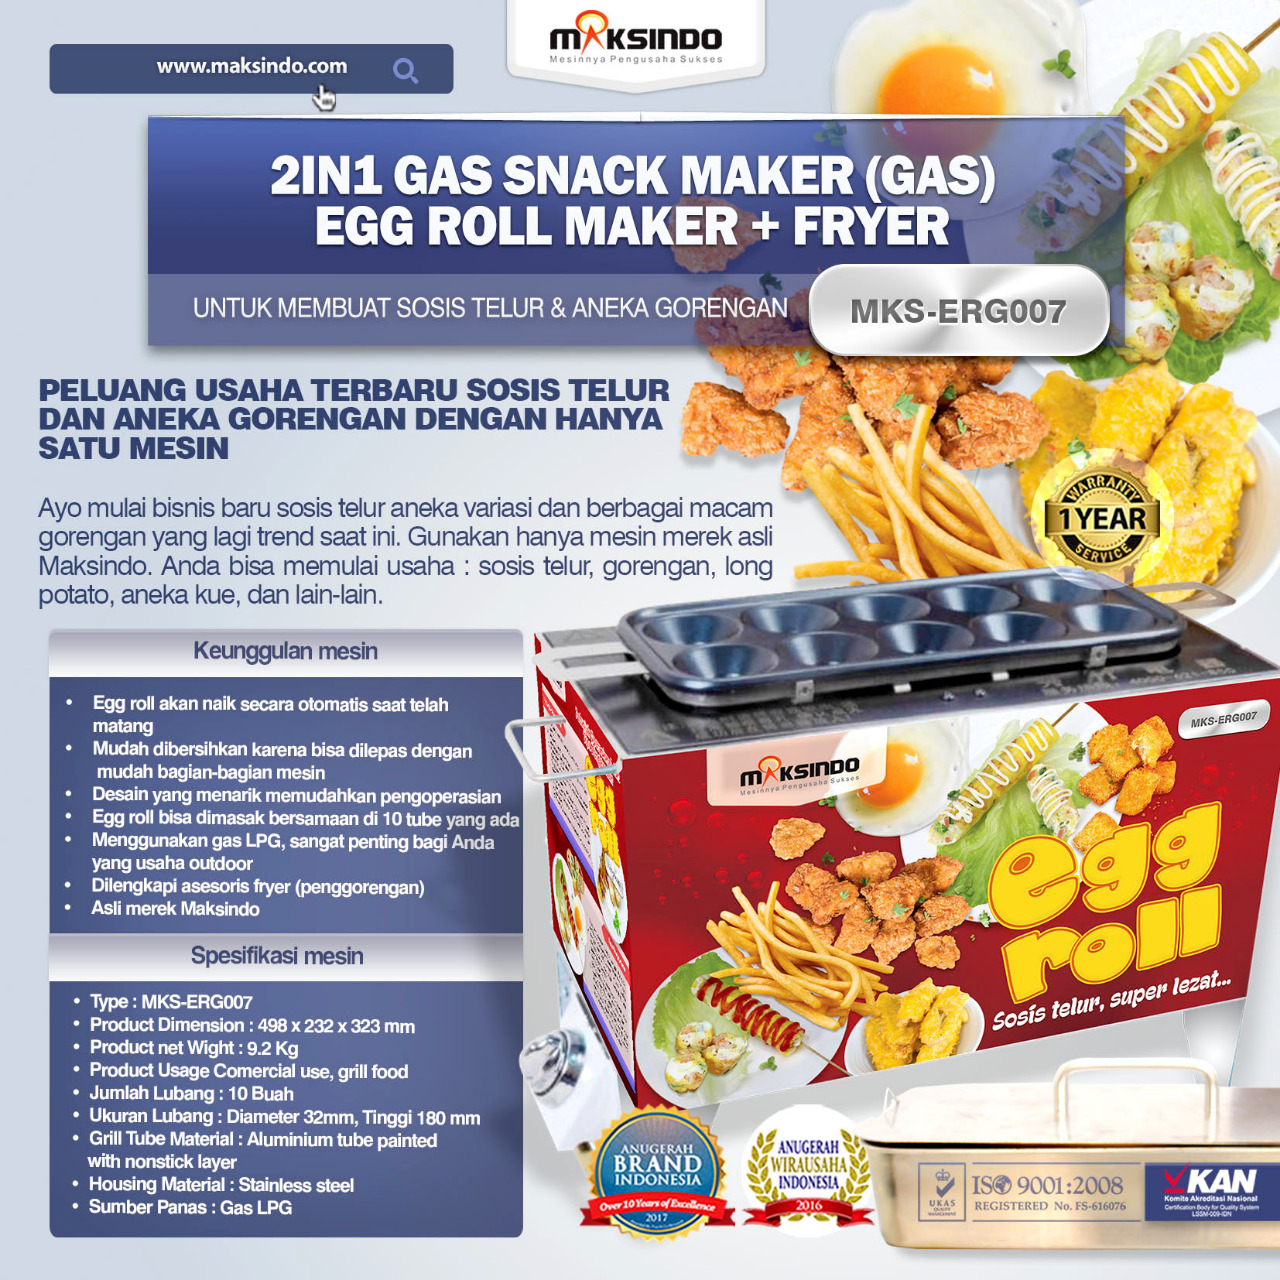 Jual Mesin Egg Roll Gas 2in1 Plus Fryer ERG007 Maksindo di Banjarmasin